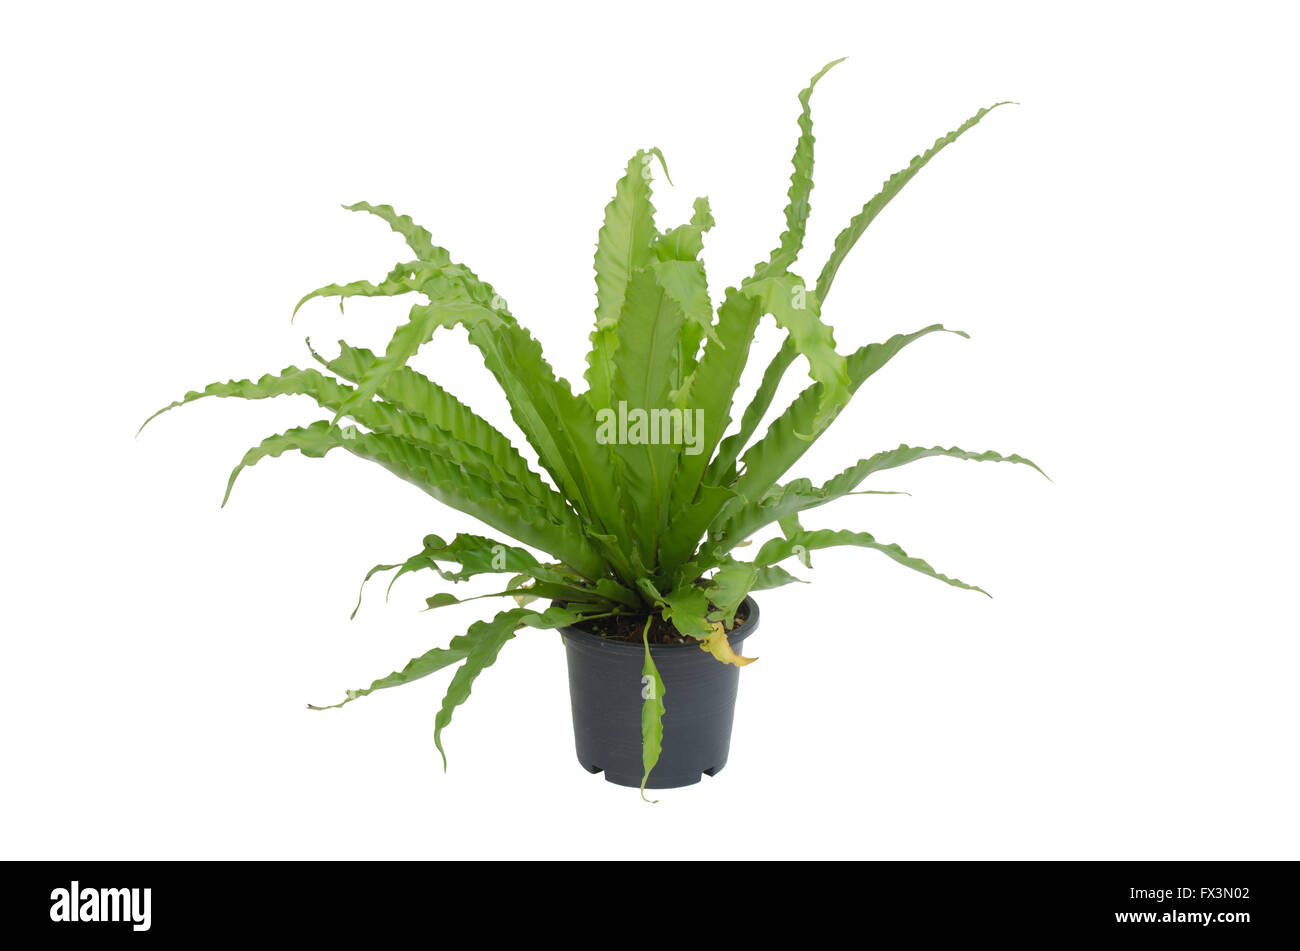 Asplenium nidus fern isolated on white background Stock Photo